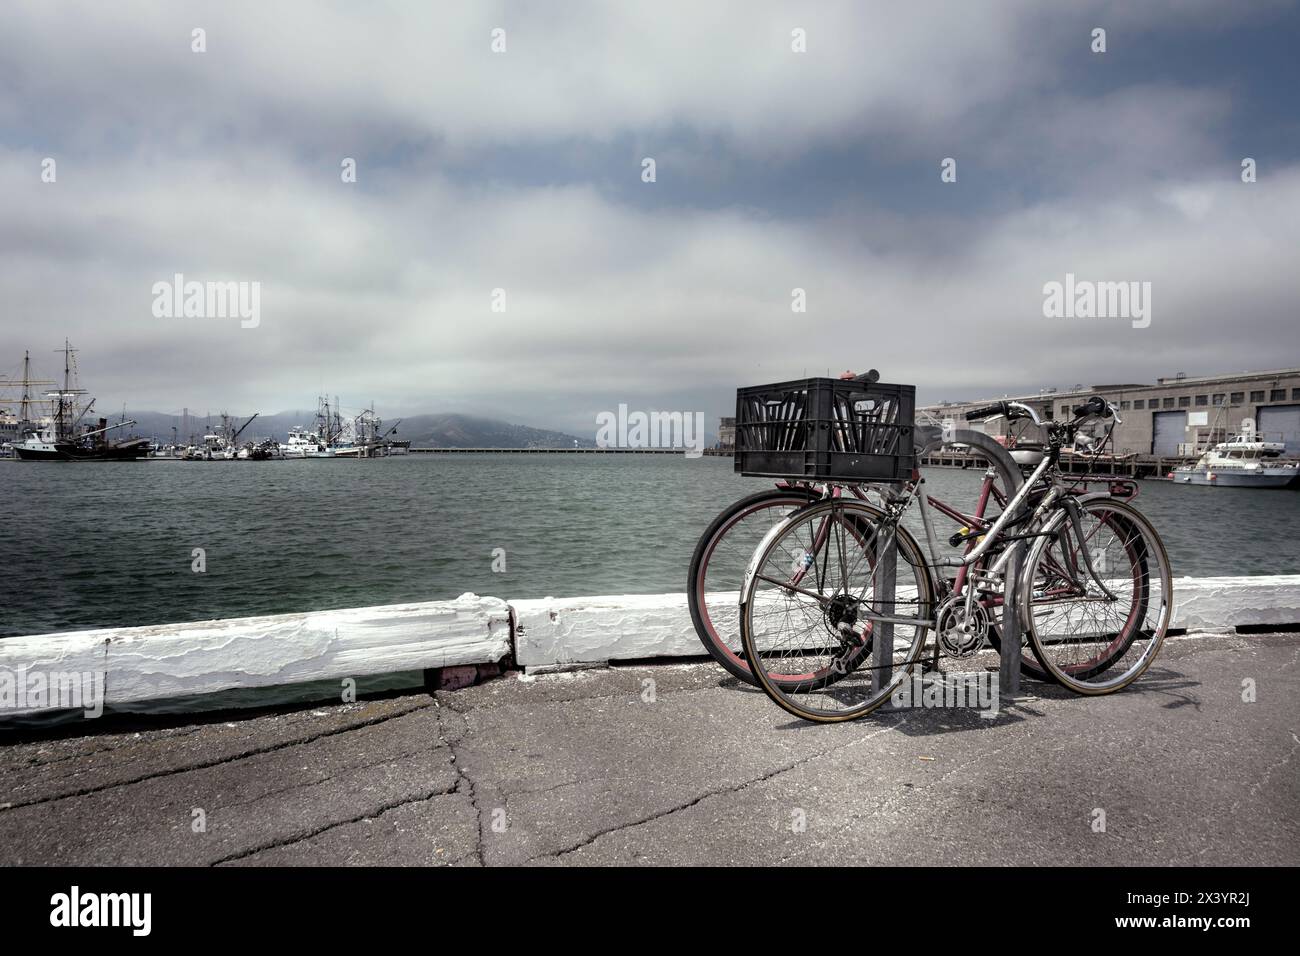 Vélos sur le quai au bord de la mer Stockfoto